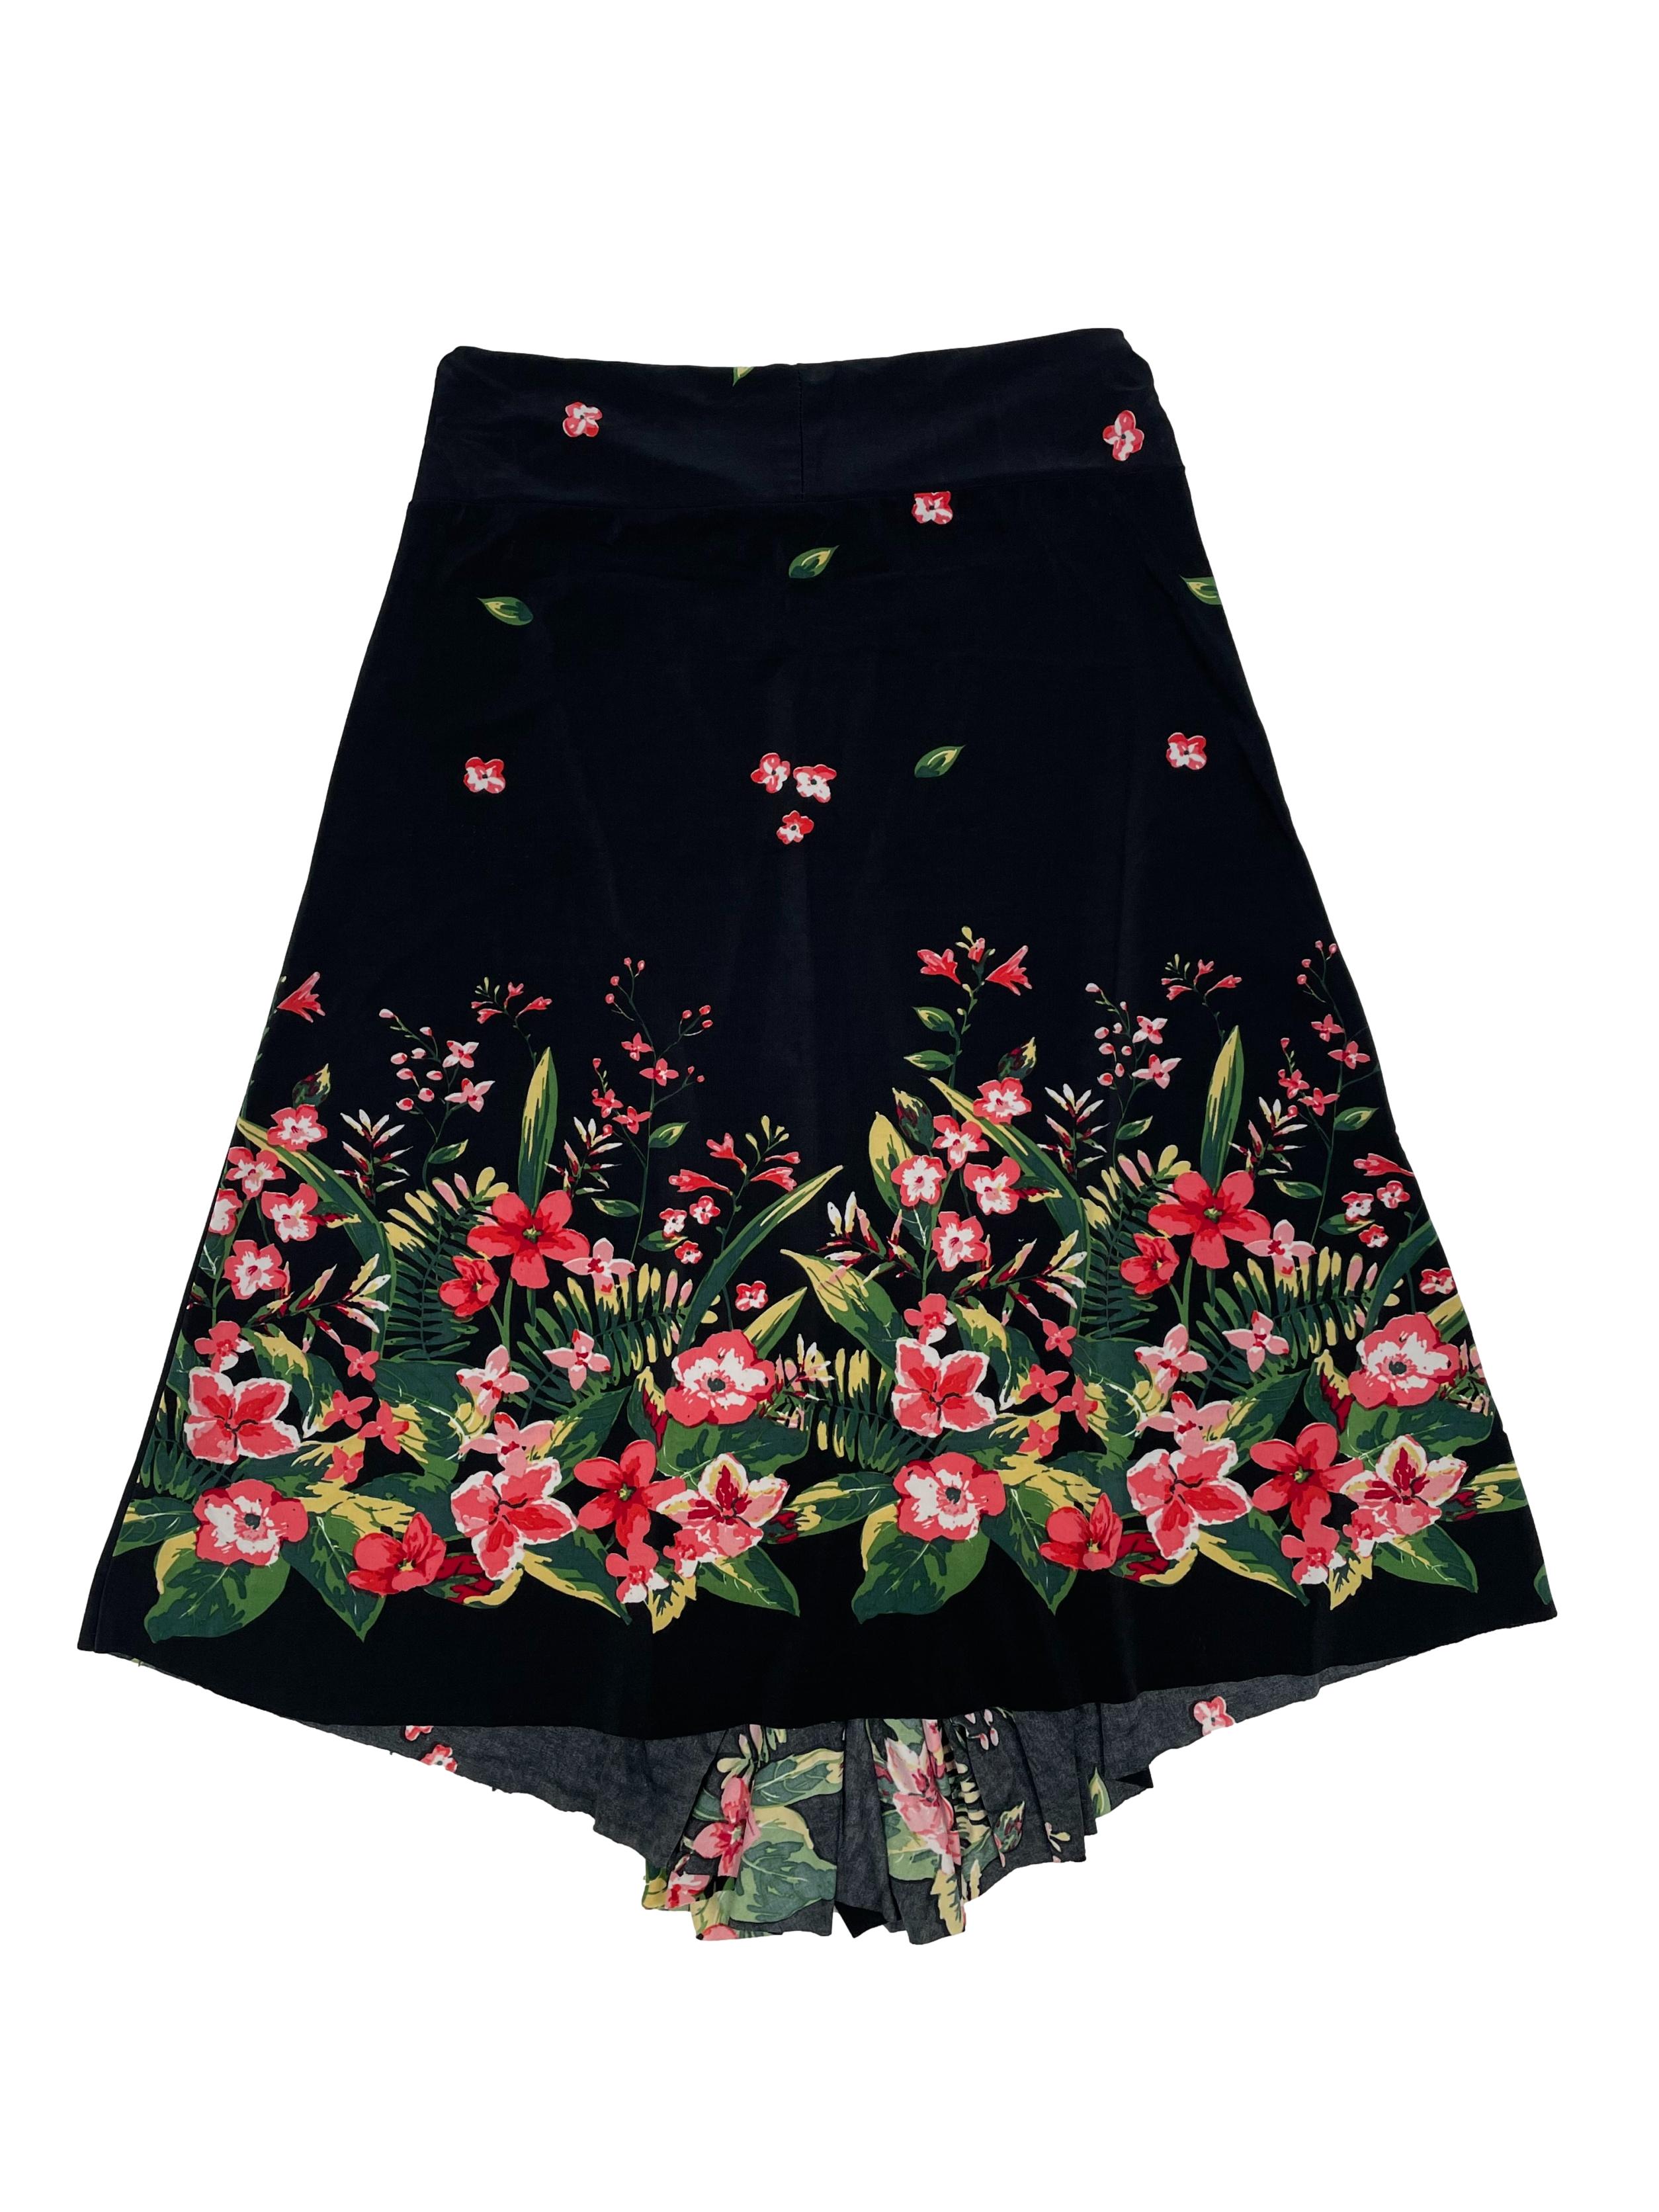 Falda negra con estampado de flores, tela stretch ligeramente satinada, pretina y falda frontal con corte en punta. Cintura 66cm sin estirar, Largo 65cm.